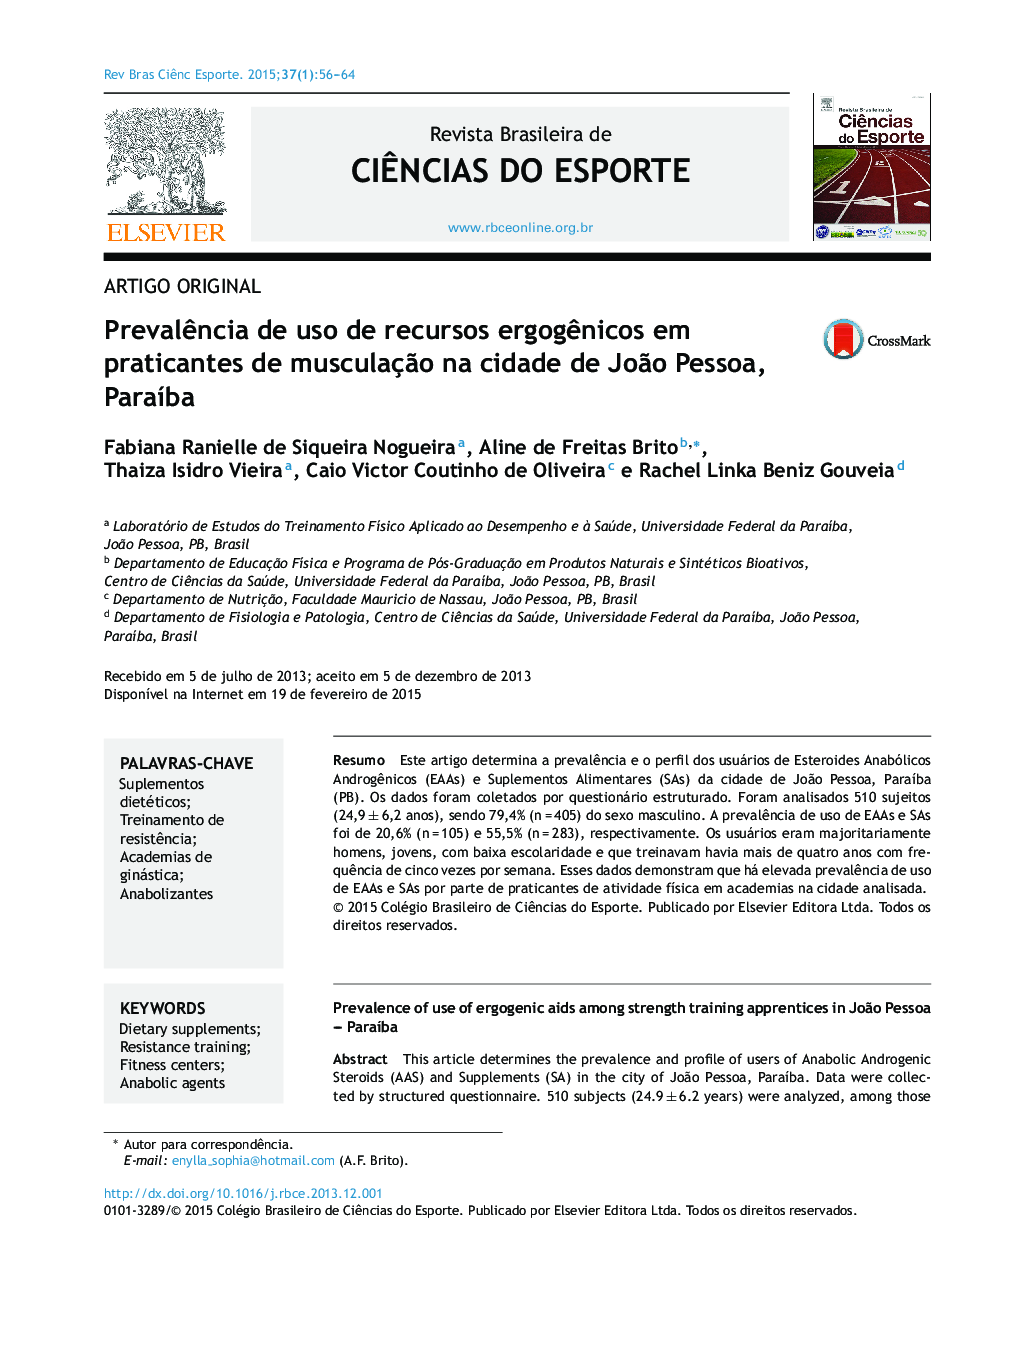 Prevalência de uso de recursos ergogênicos em praticantes de musculação na cidade de João Pessoa, Paraíba